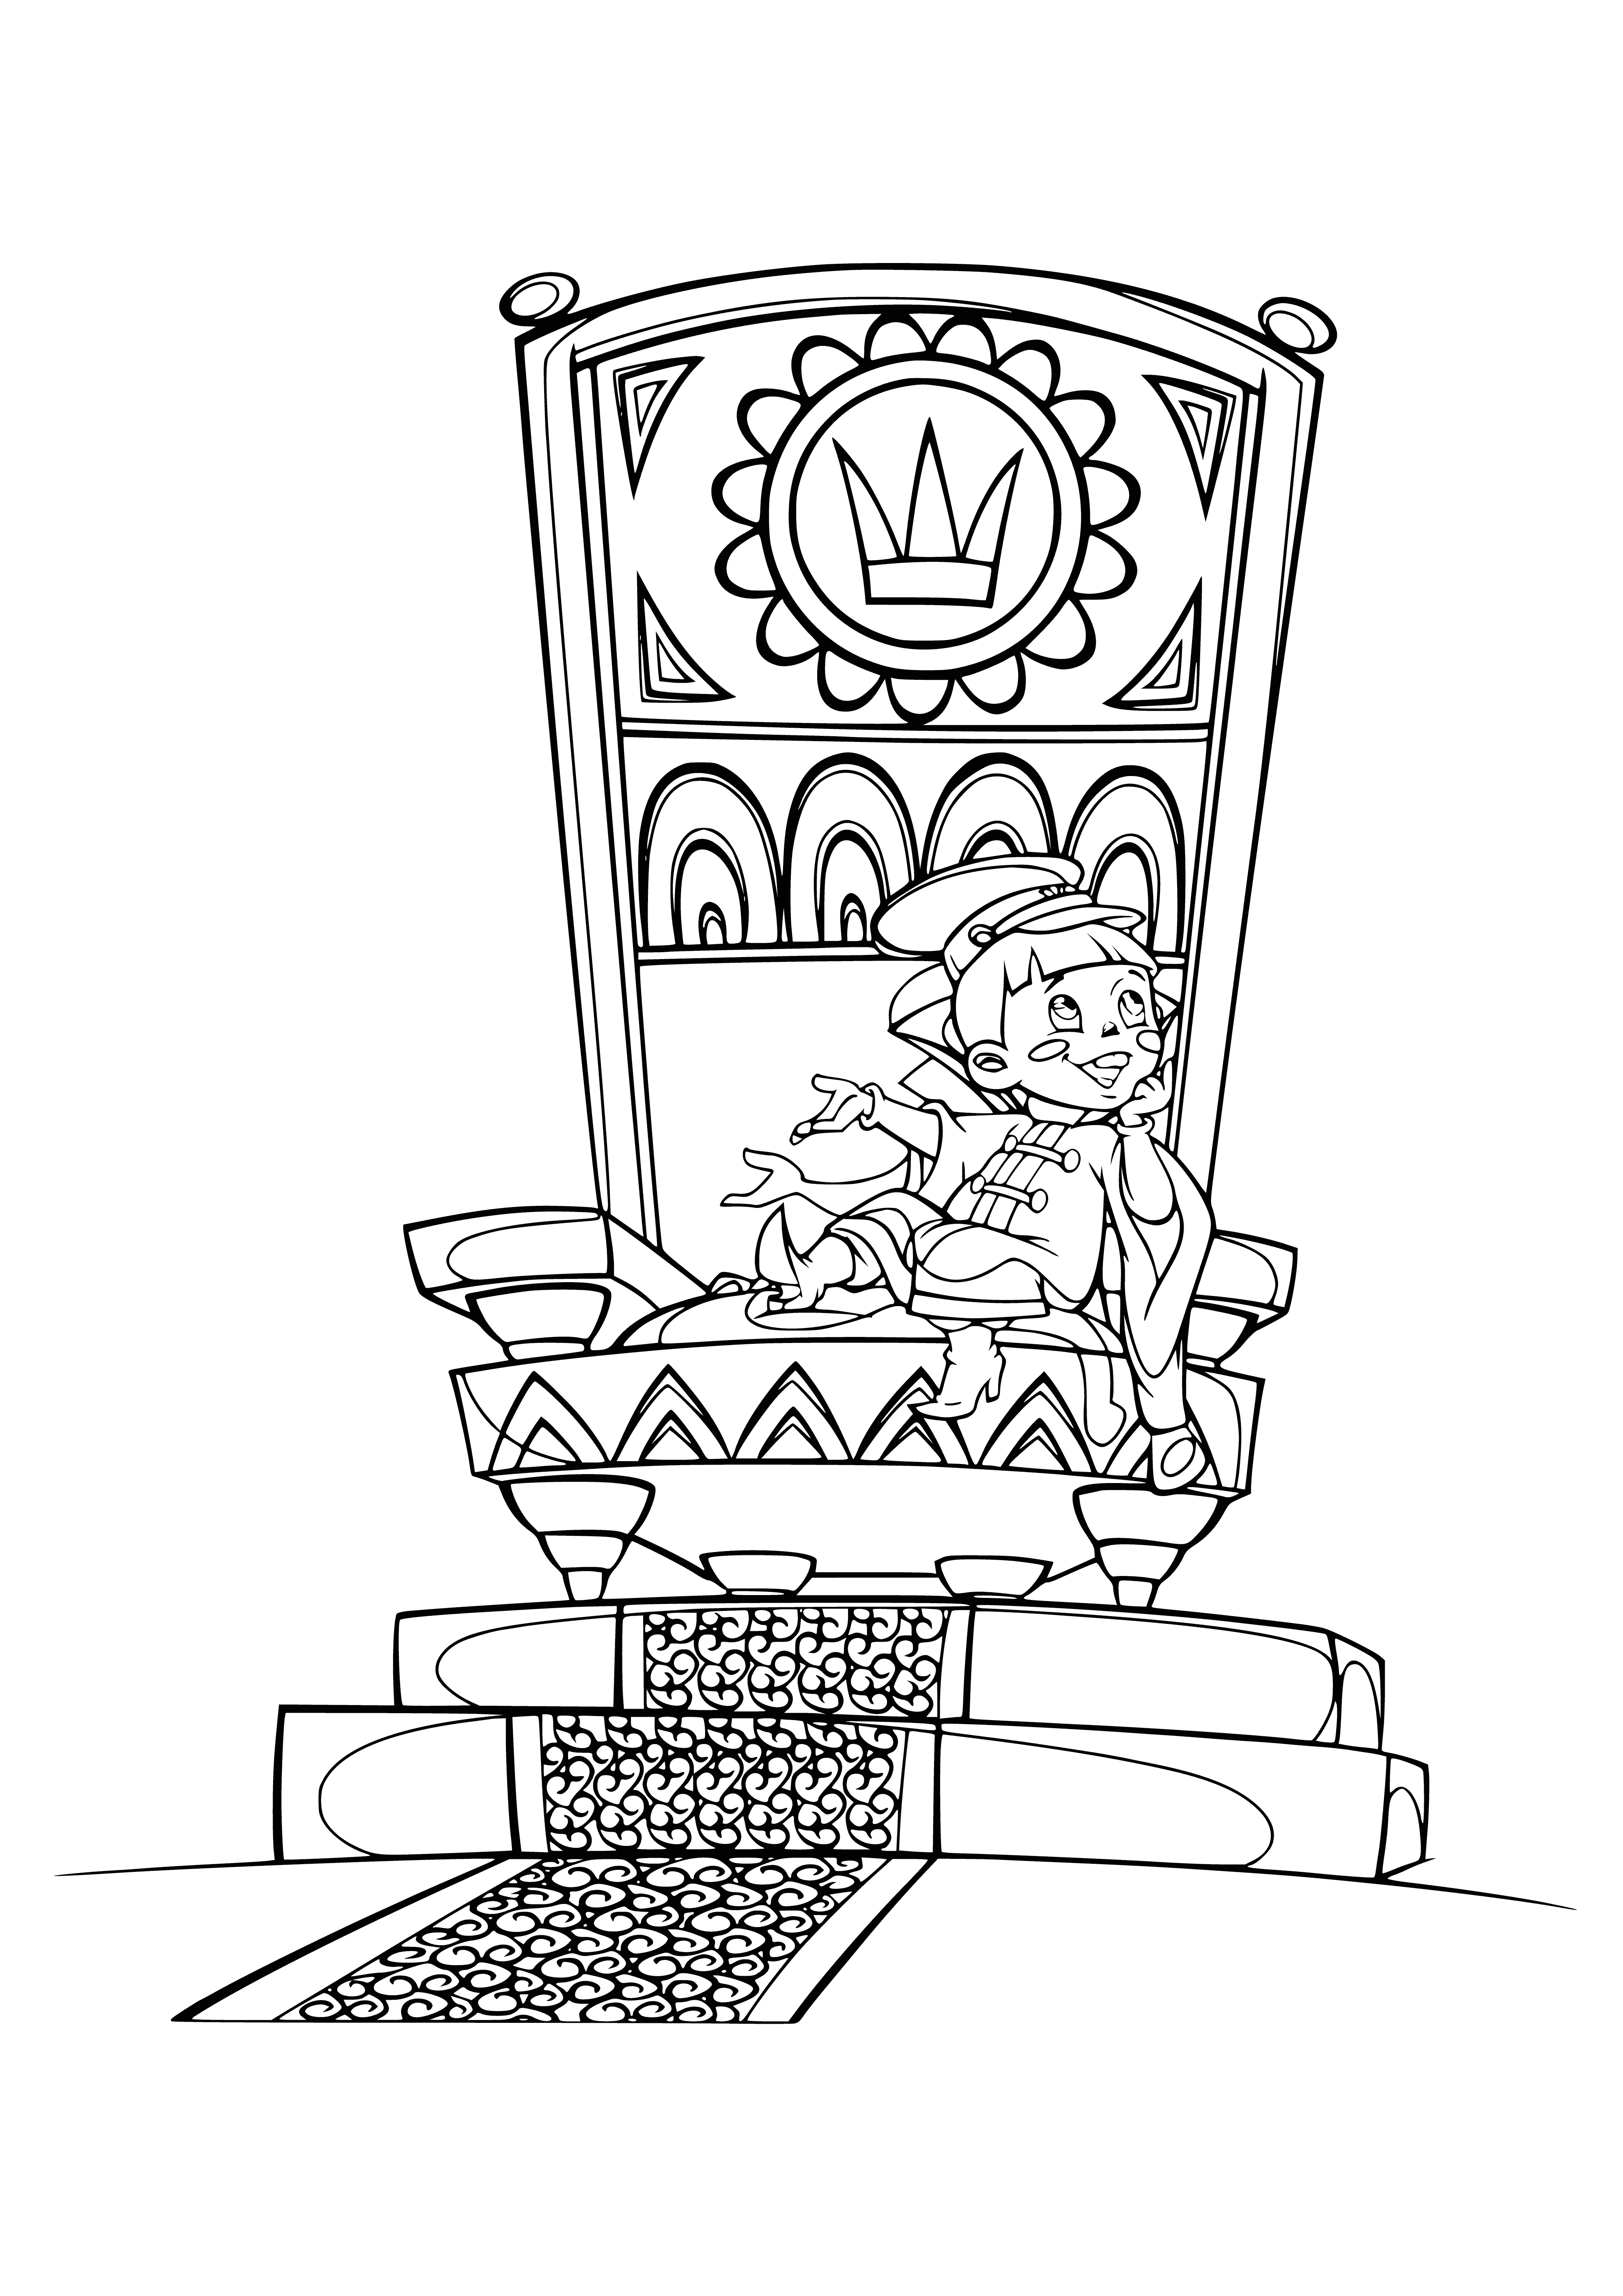 Vovka sur le trône coloriage